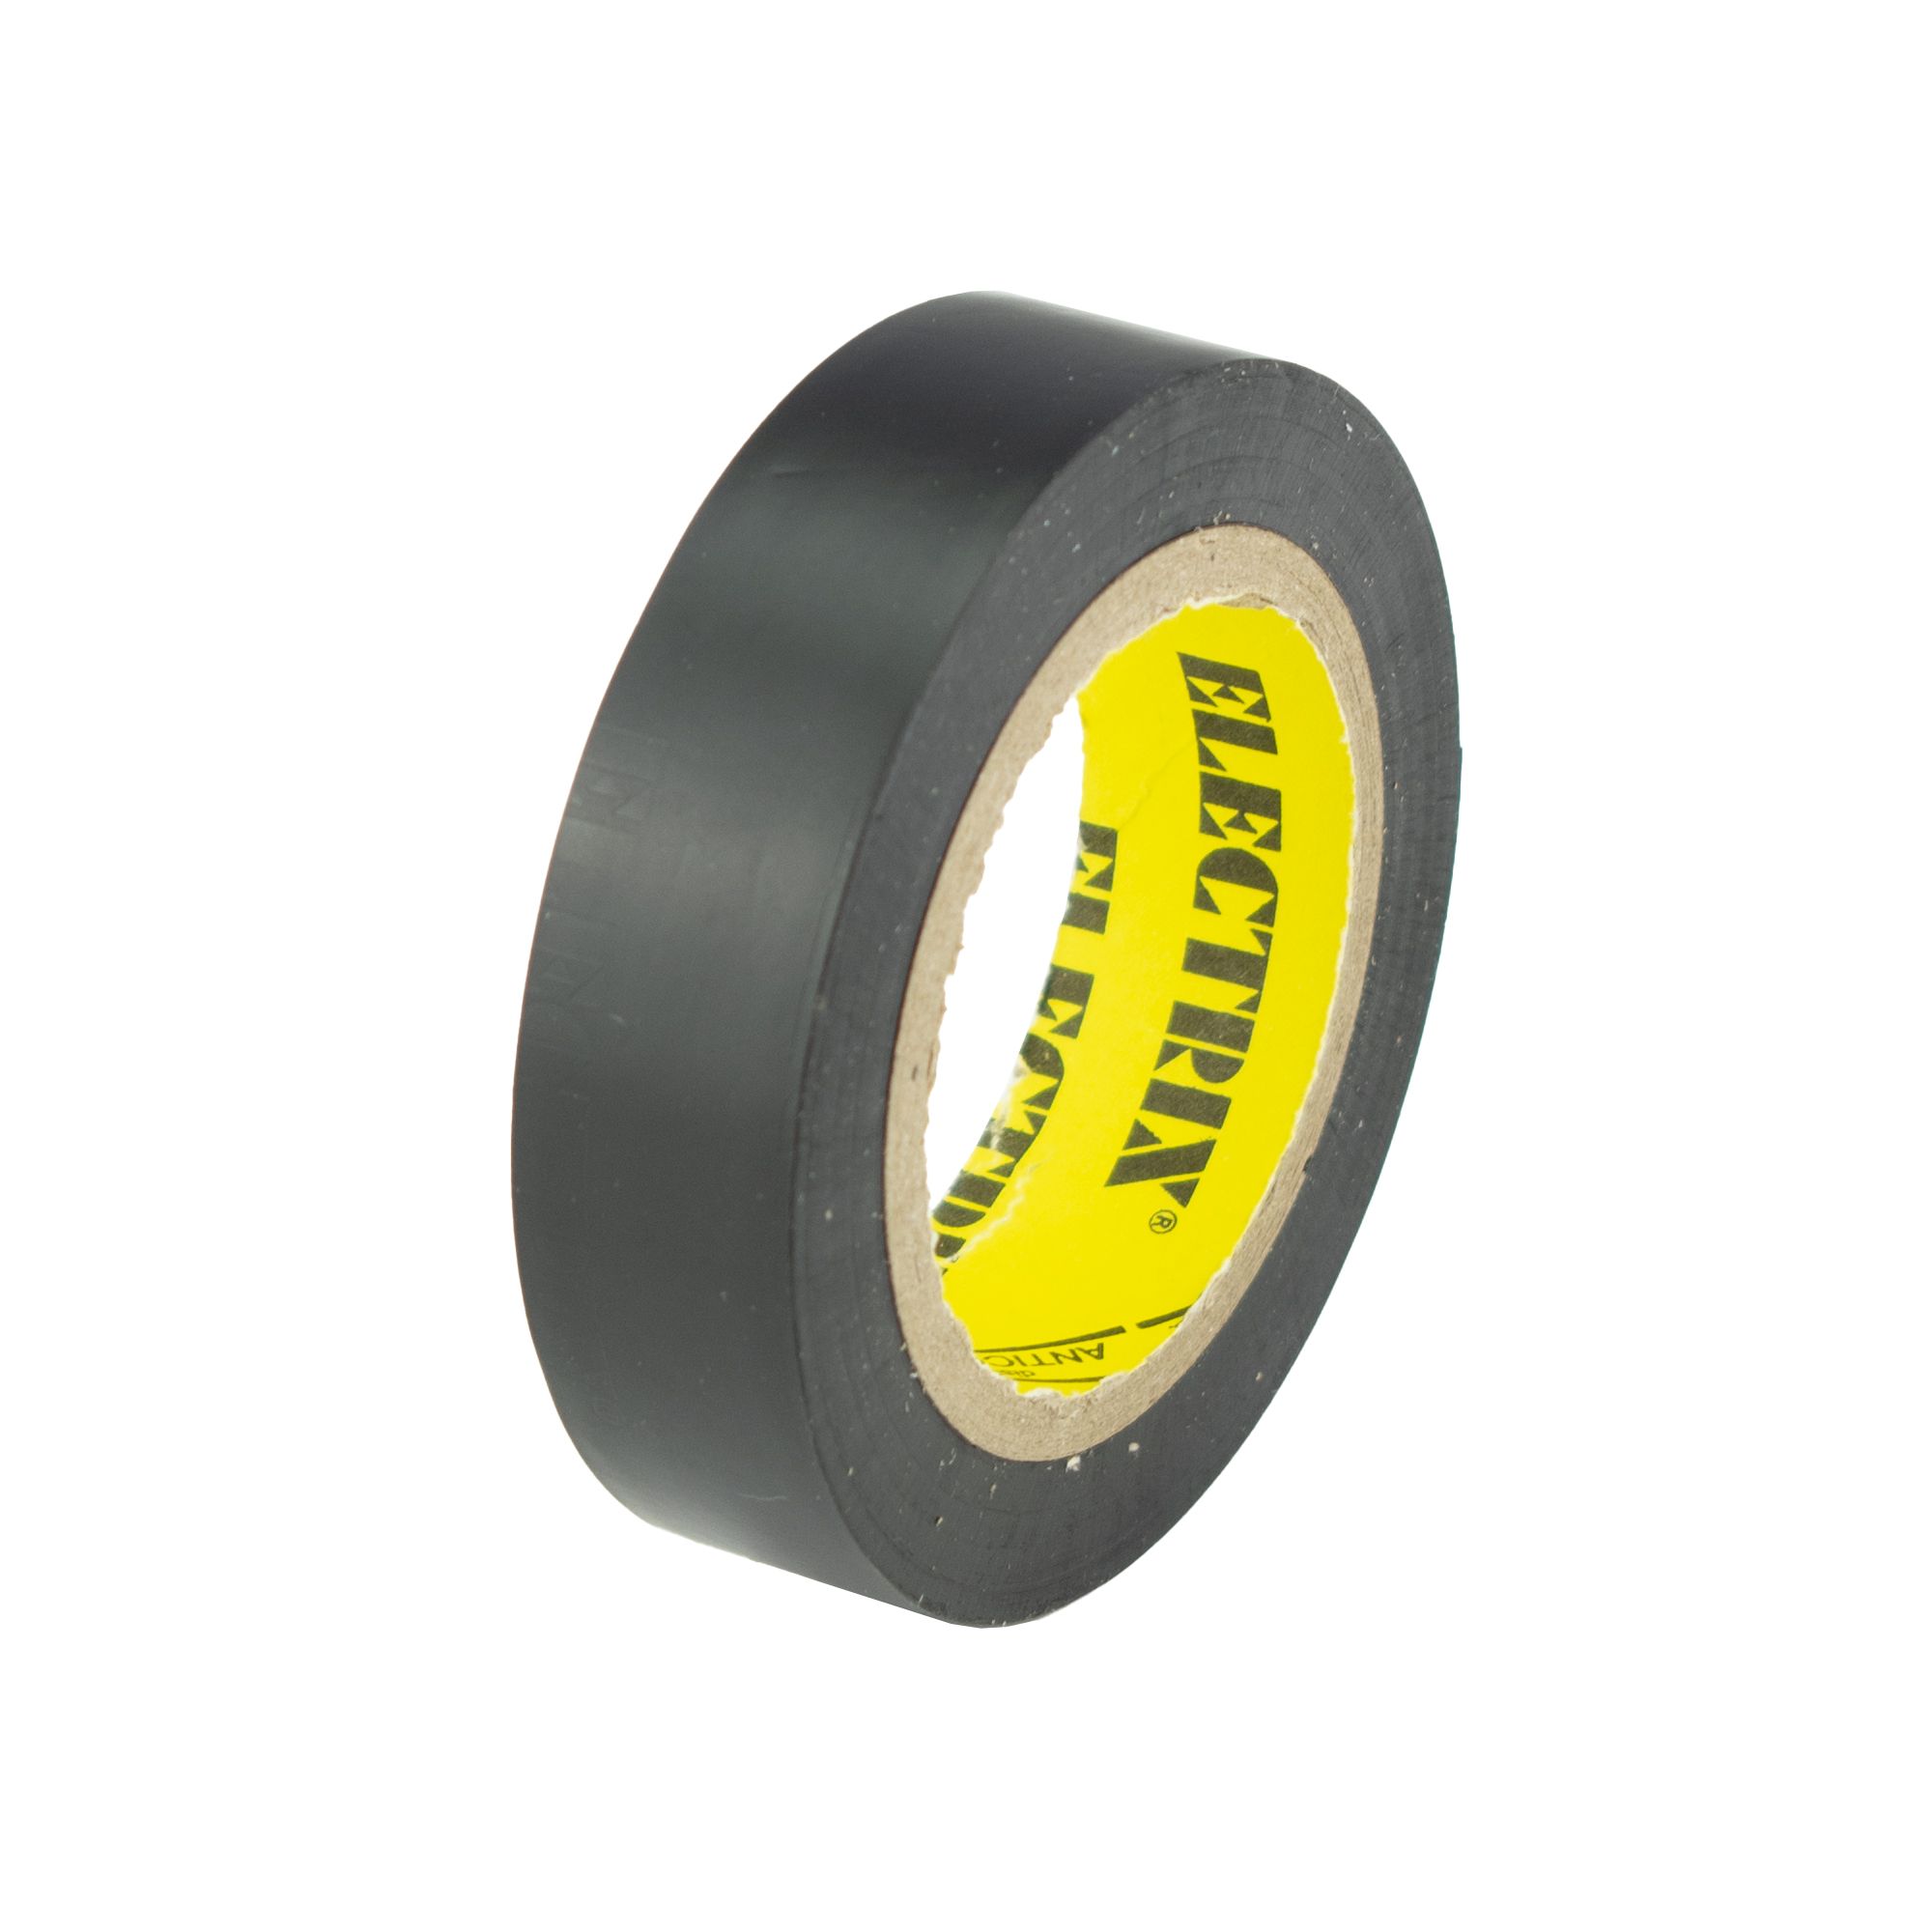 Izolační páska PVC 15mm / 10m, černá